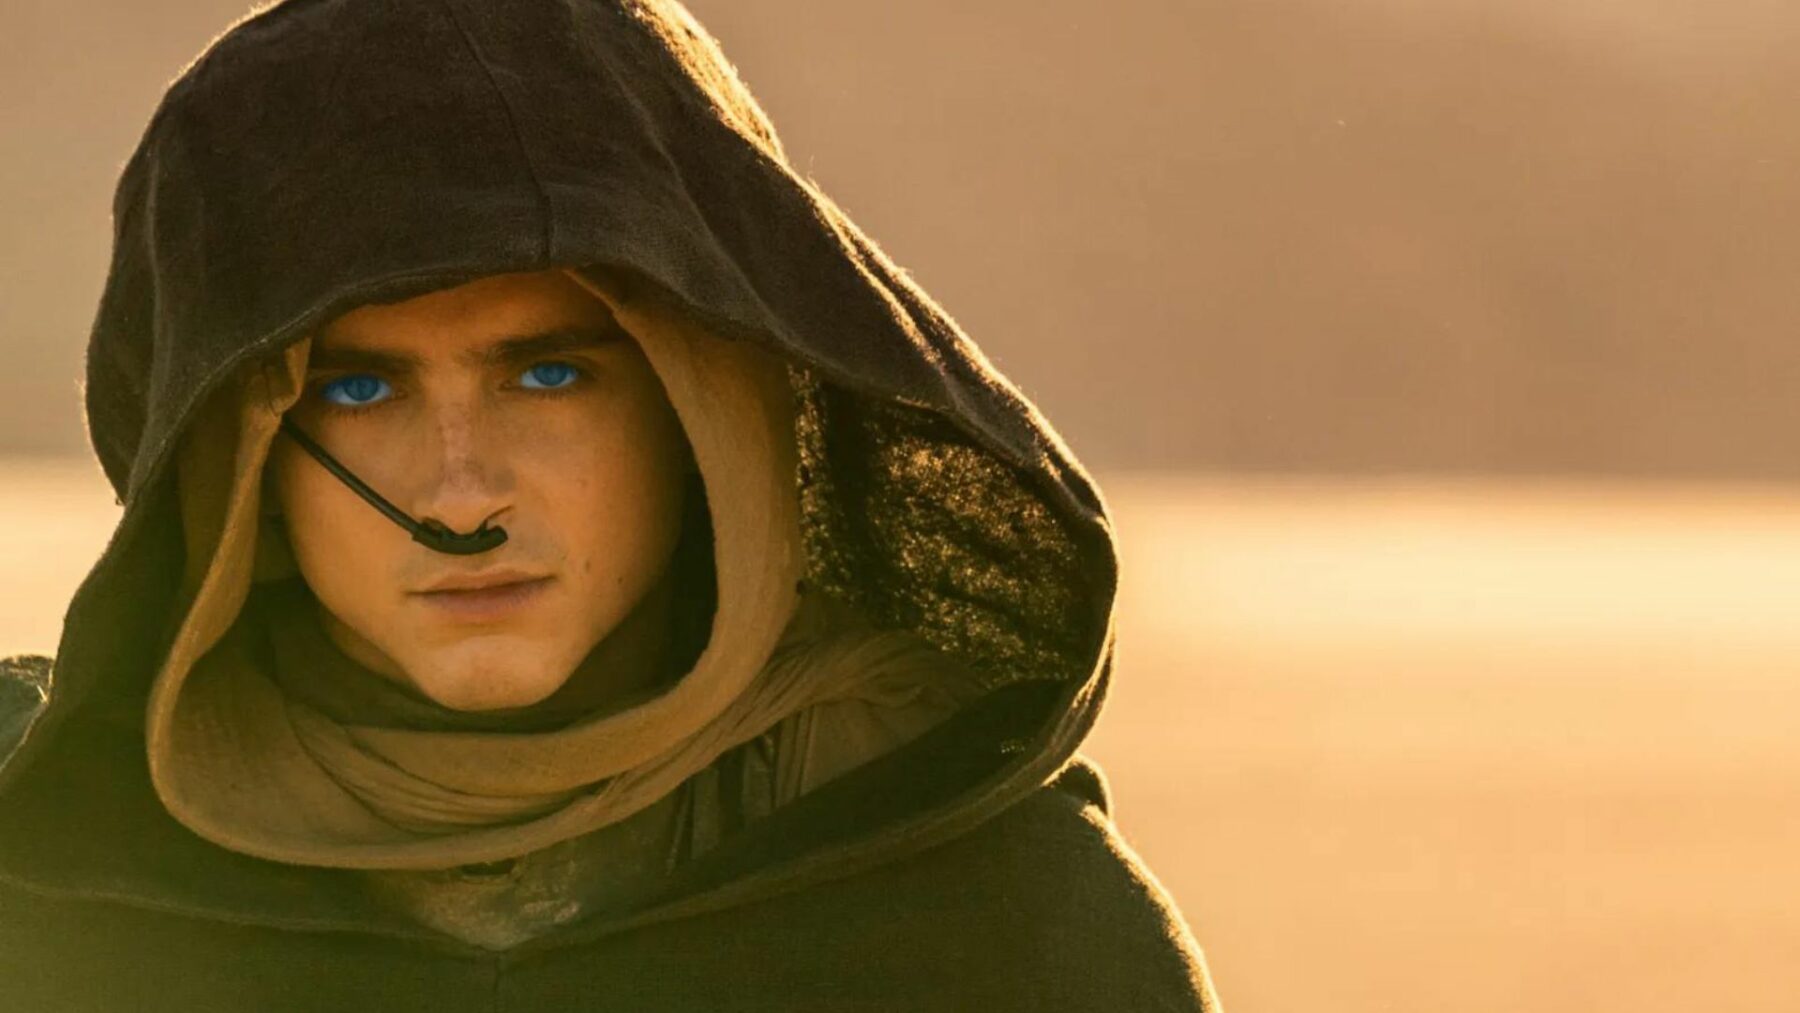 Młody chłopak na pustyni, ubrany w płaszcz z dużym kapturem.